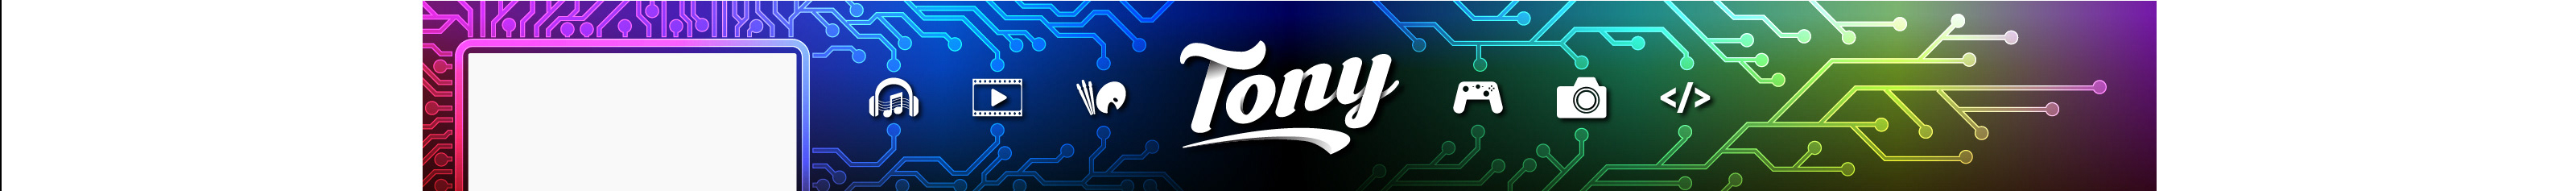 Bannière de profil de Tony Major